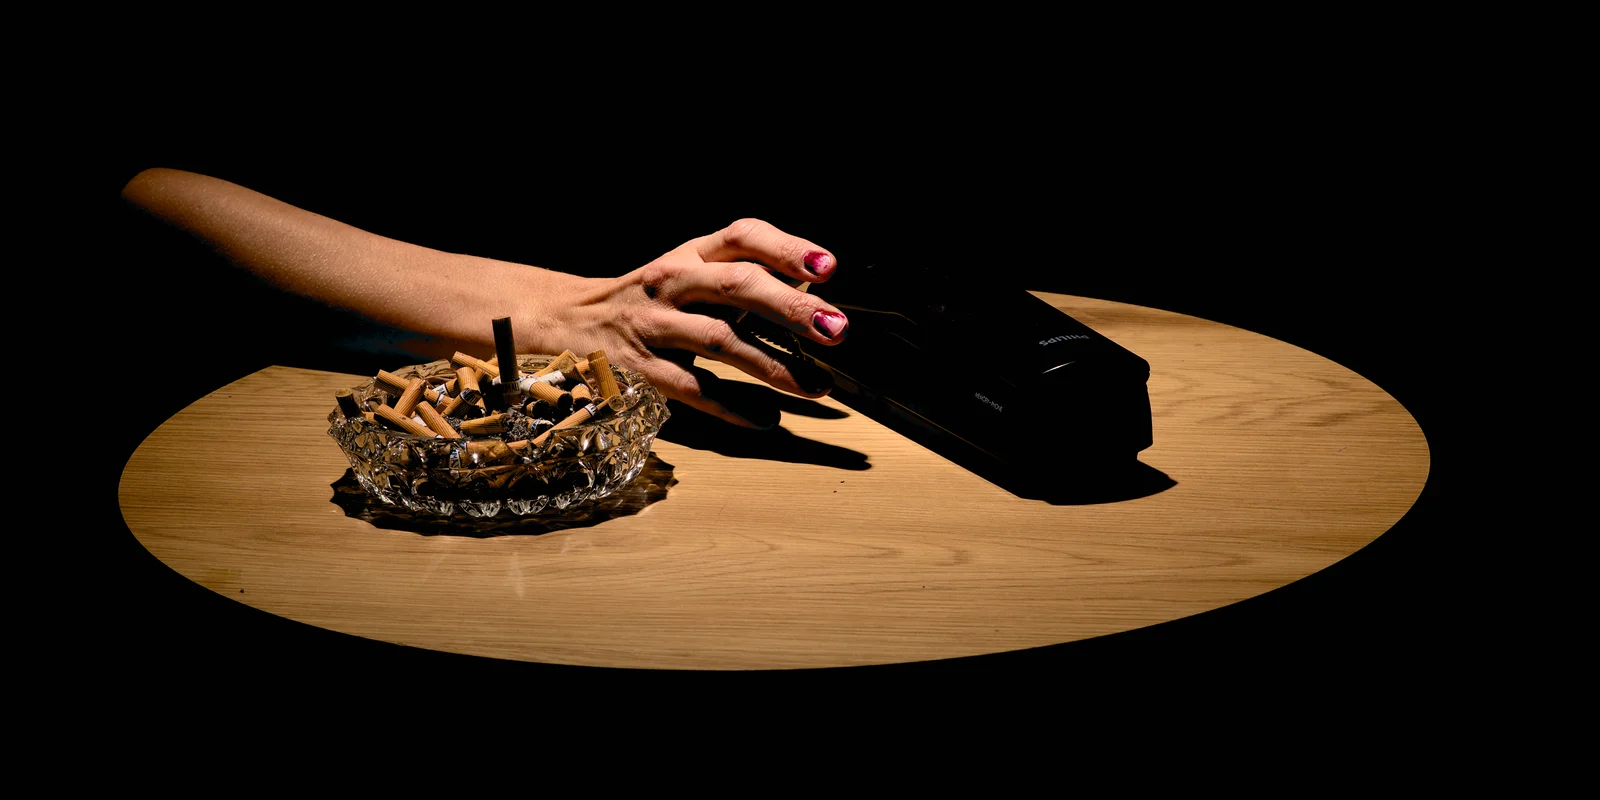 Ein Tisch, darauf ein voller Aschenbecher, von der linken Seite greift eine Hand nach einem Telefonhörer.